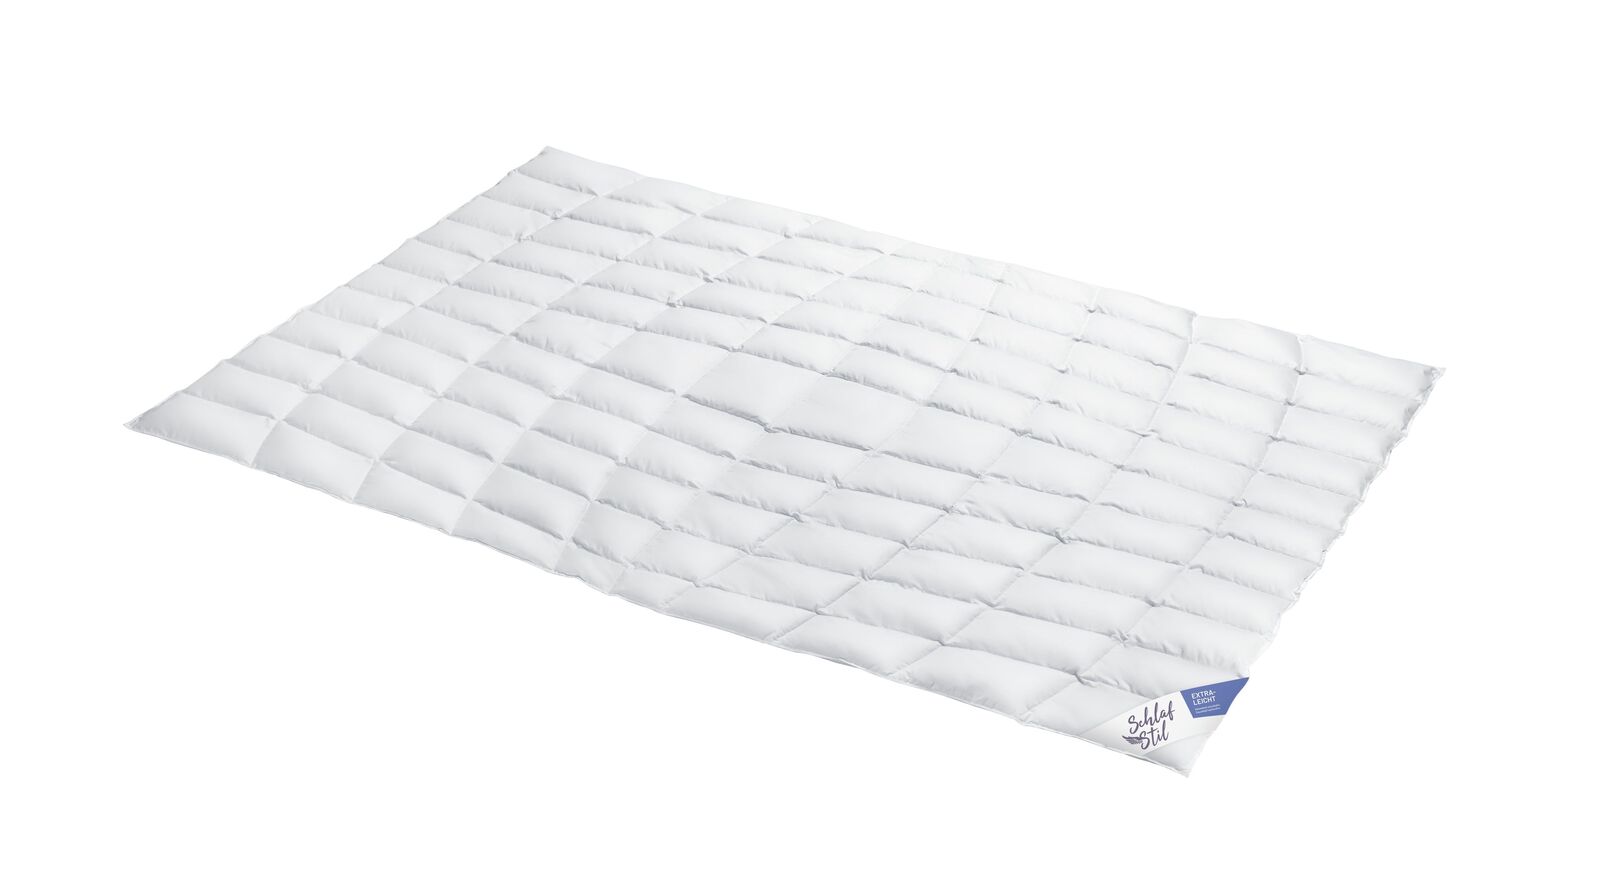 SCHLAFSTIL Eiderdaunen-Bettdecke D1000 extra leicht für schwereloses Schlafen